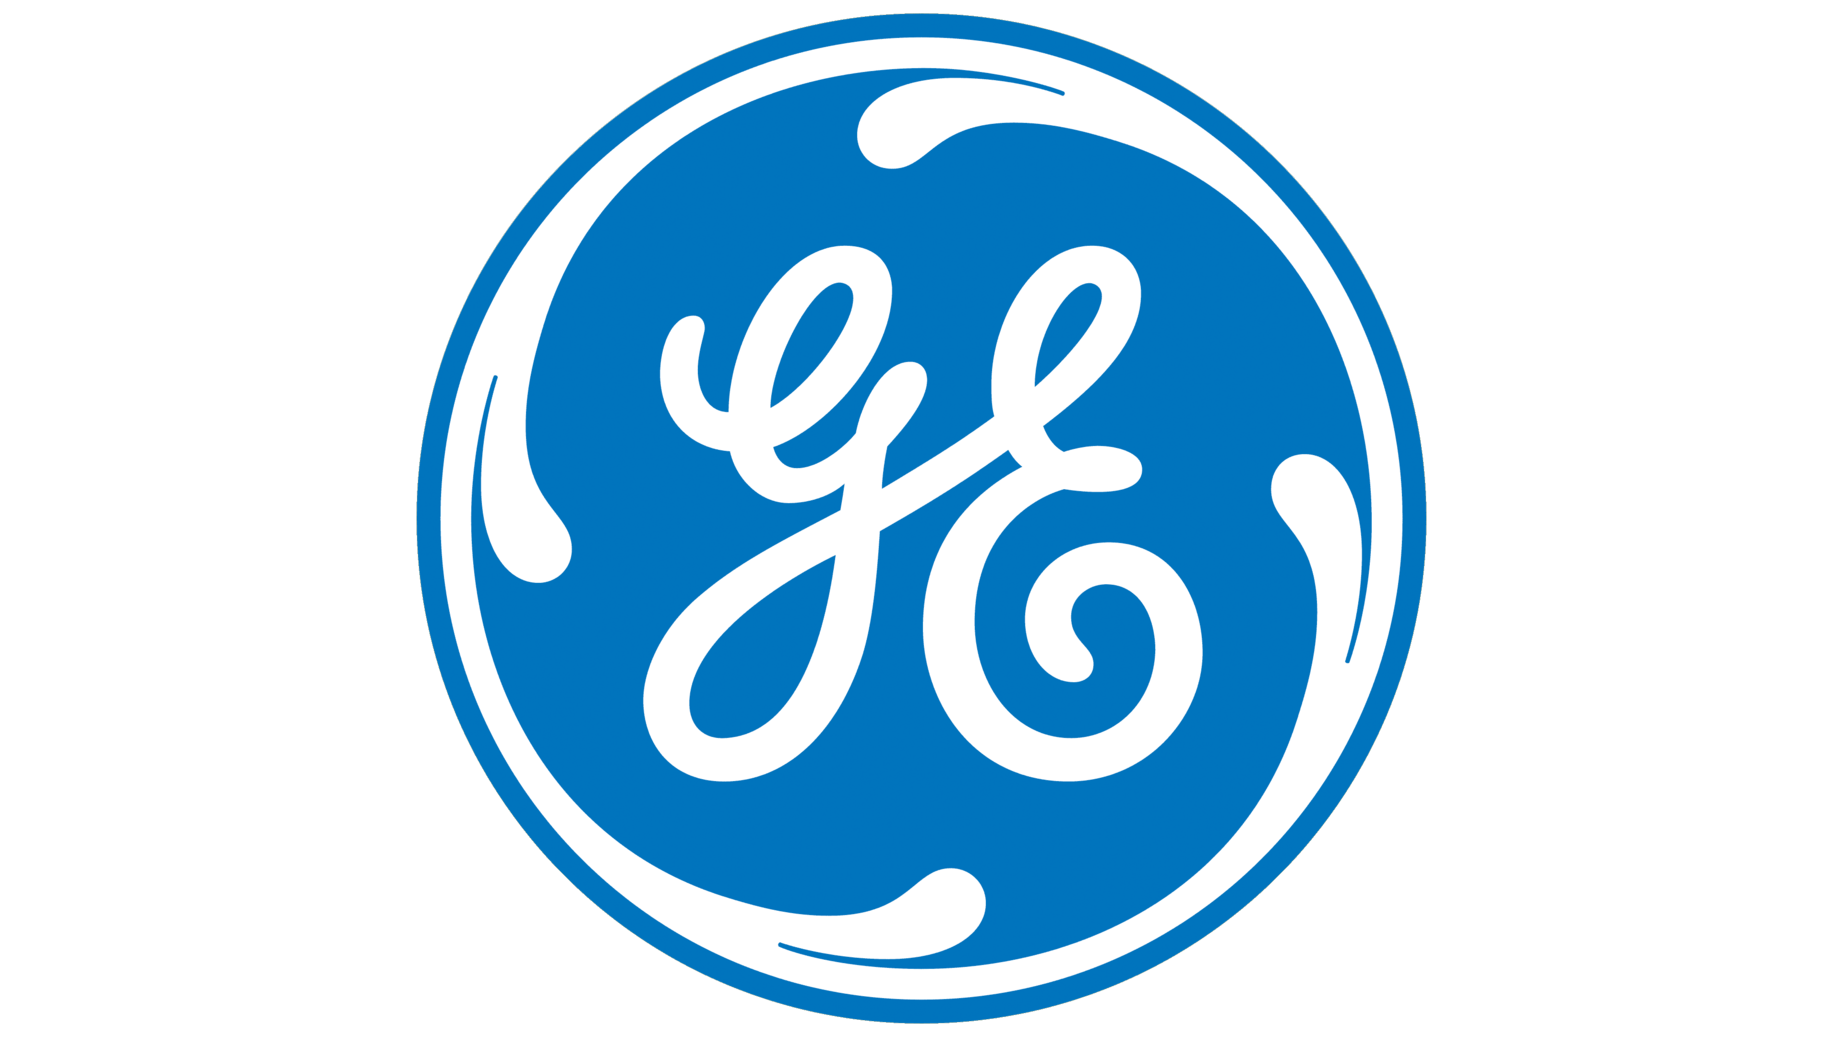 General electric symbol